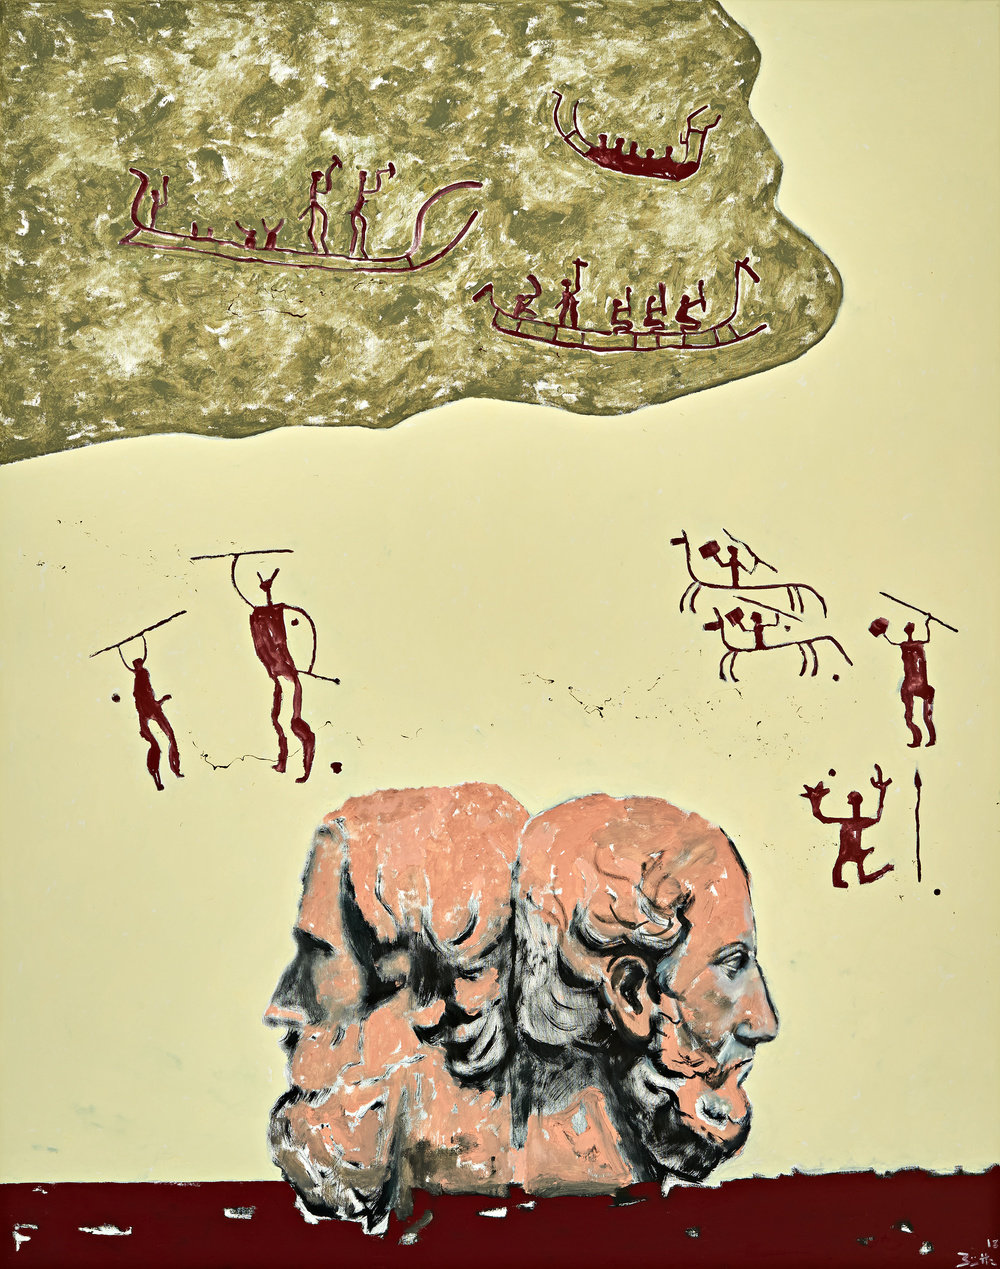 Büttner, herodotus and thucydides, storytellers (herodot und thukydides geschichtenerzaehler), 2018, oil on canvas, 74 3 4 x 59 in., 190 x 150 cm, cnon 60.827